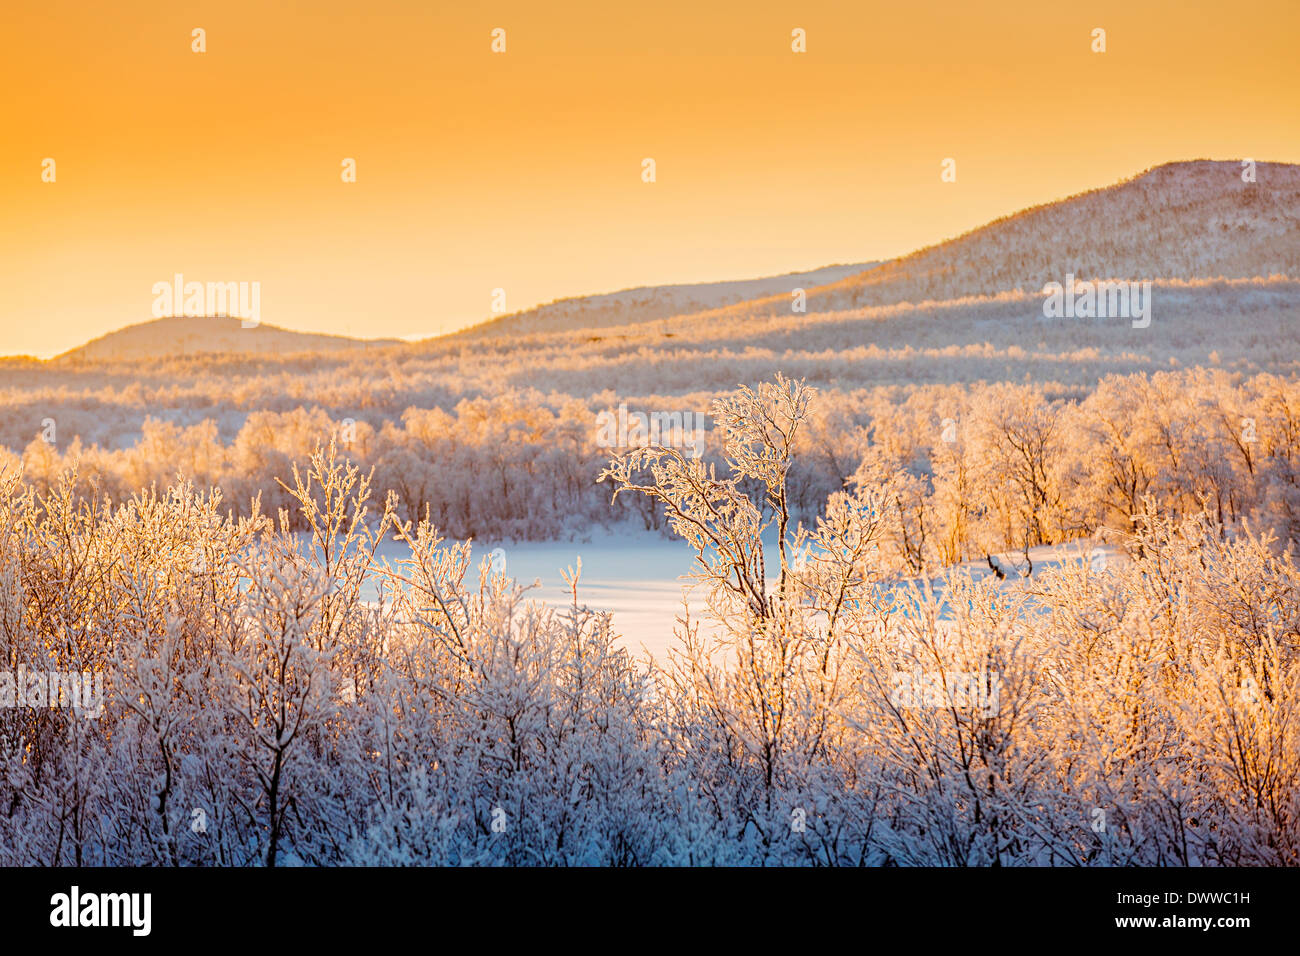 Coucher du soleil et des arbres dans le paysage gelé de froid, des températures aussi basses que -47 degrés Celsius, Laponie, Suède Banque D'Images